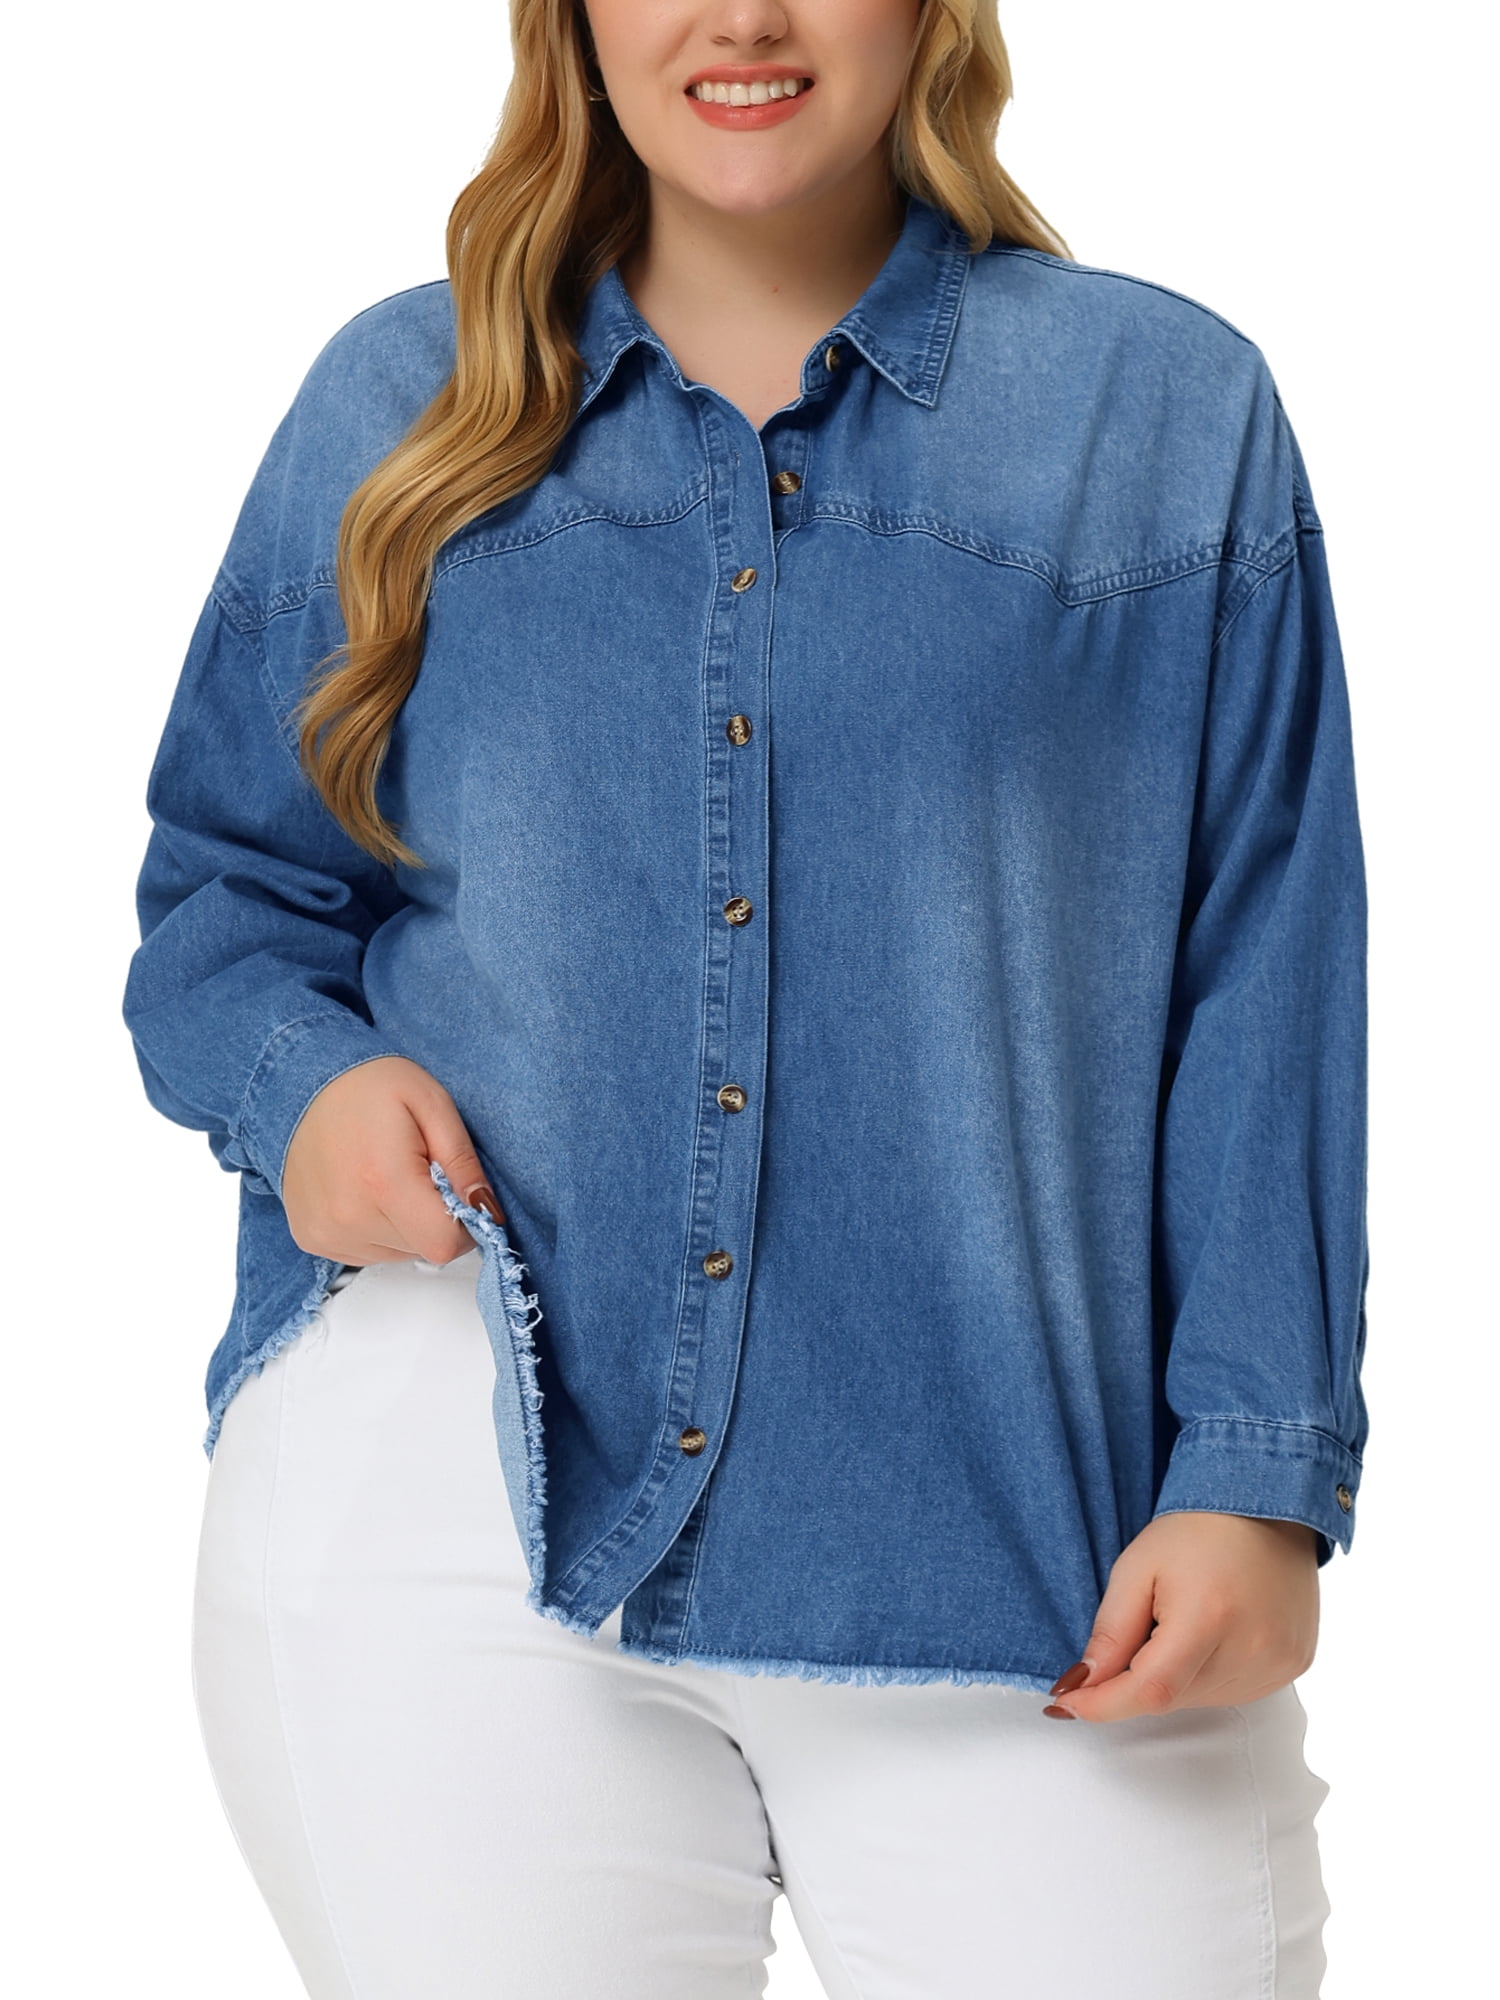 Unique Bargains Women's Plus Size Long Sleeve Button Down Denim Shirt 2X  Light Blue